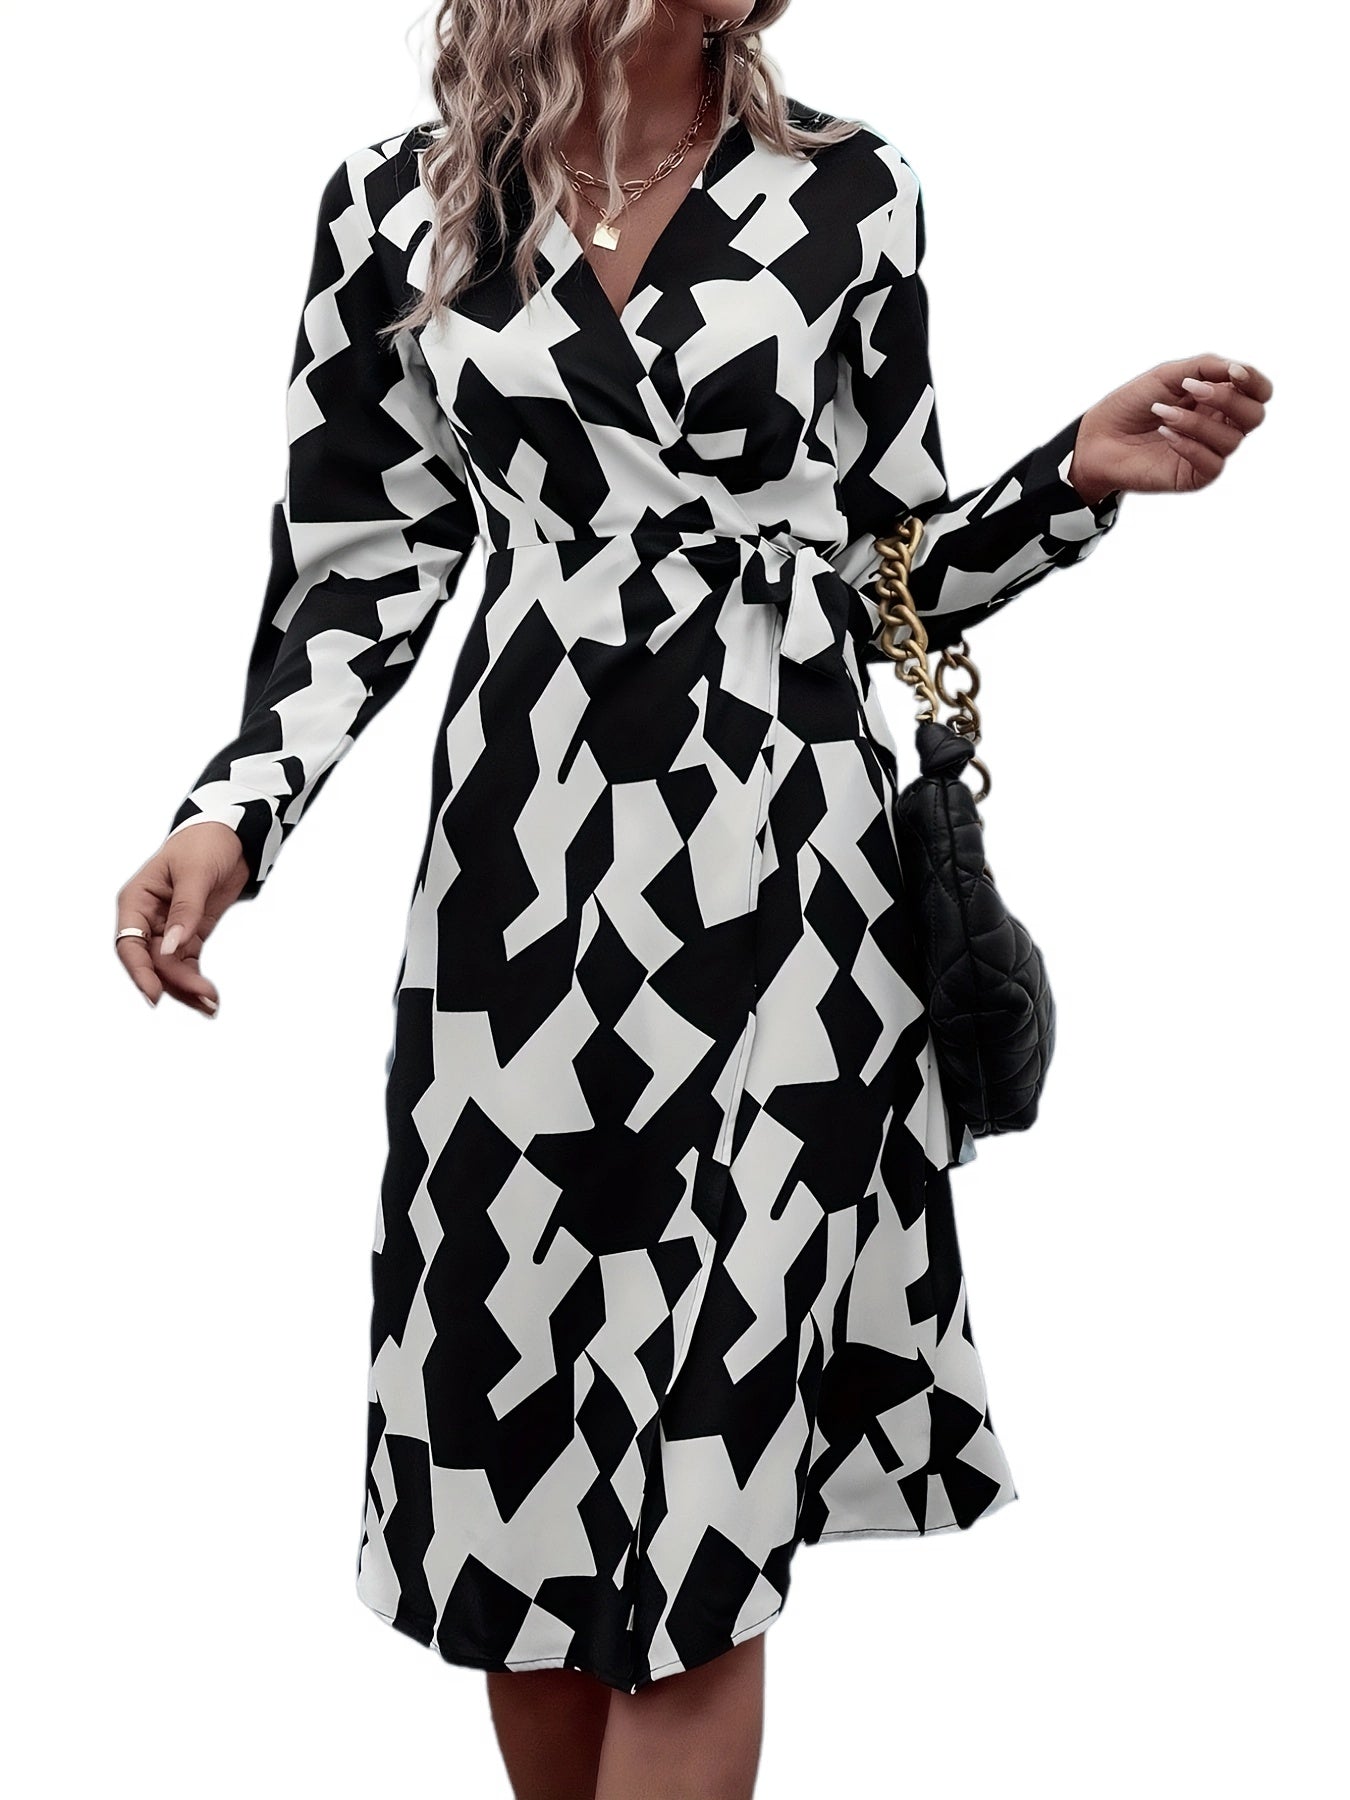 Vzyzv Geo Print Wrap V Neck Dress, Elegant Long Sleeve Dress For Spring & Fall, Women's Clothing